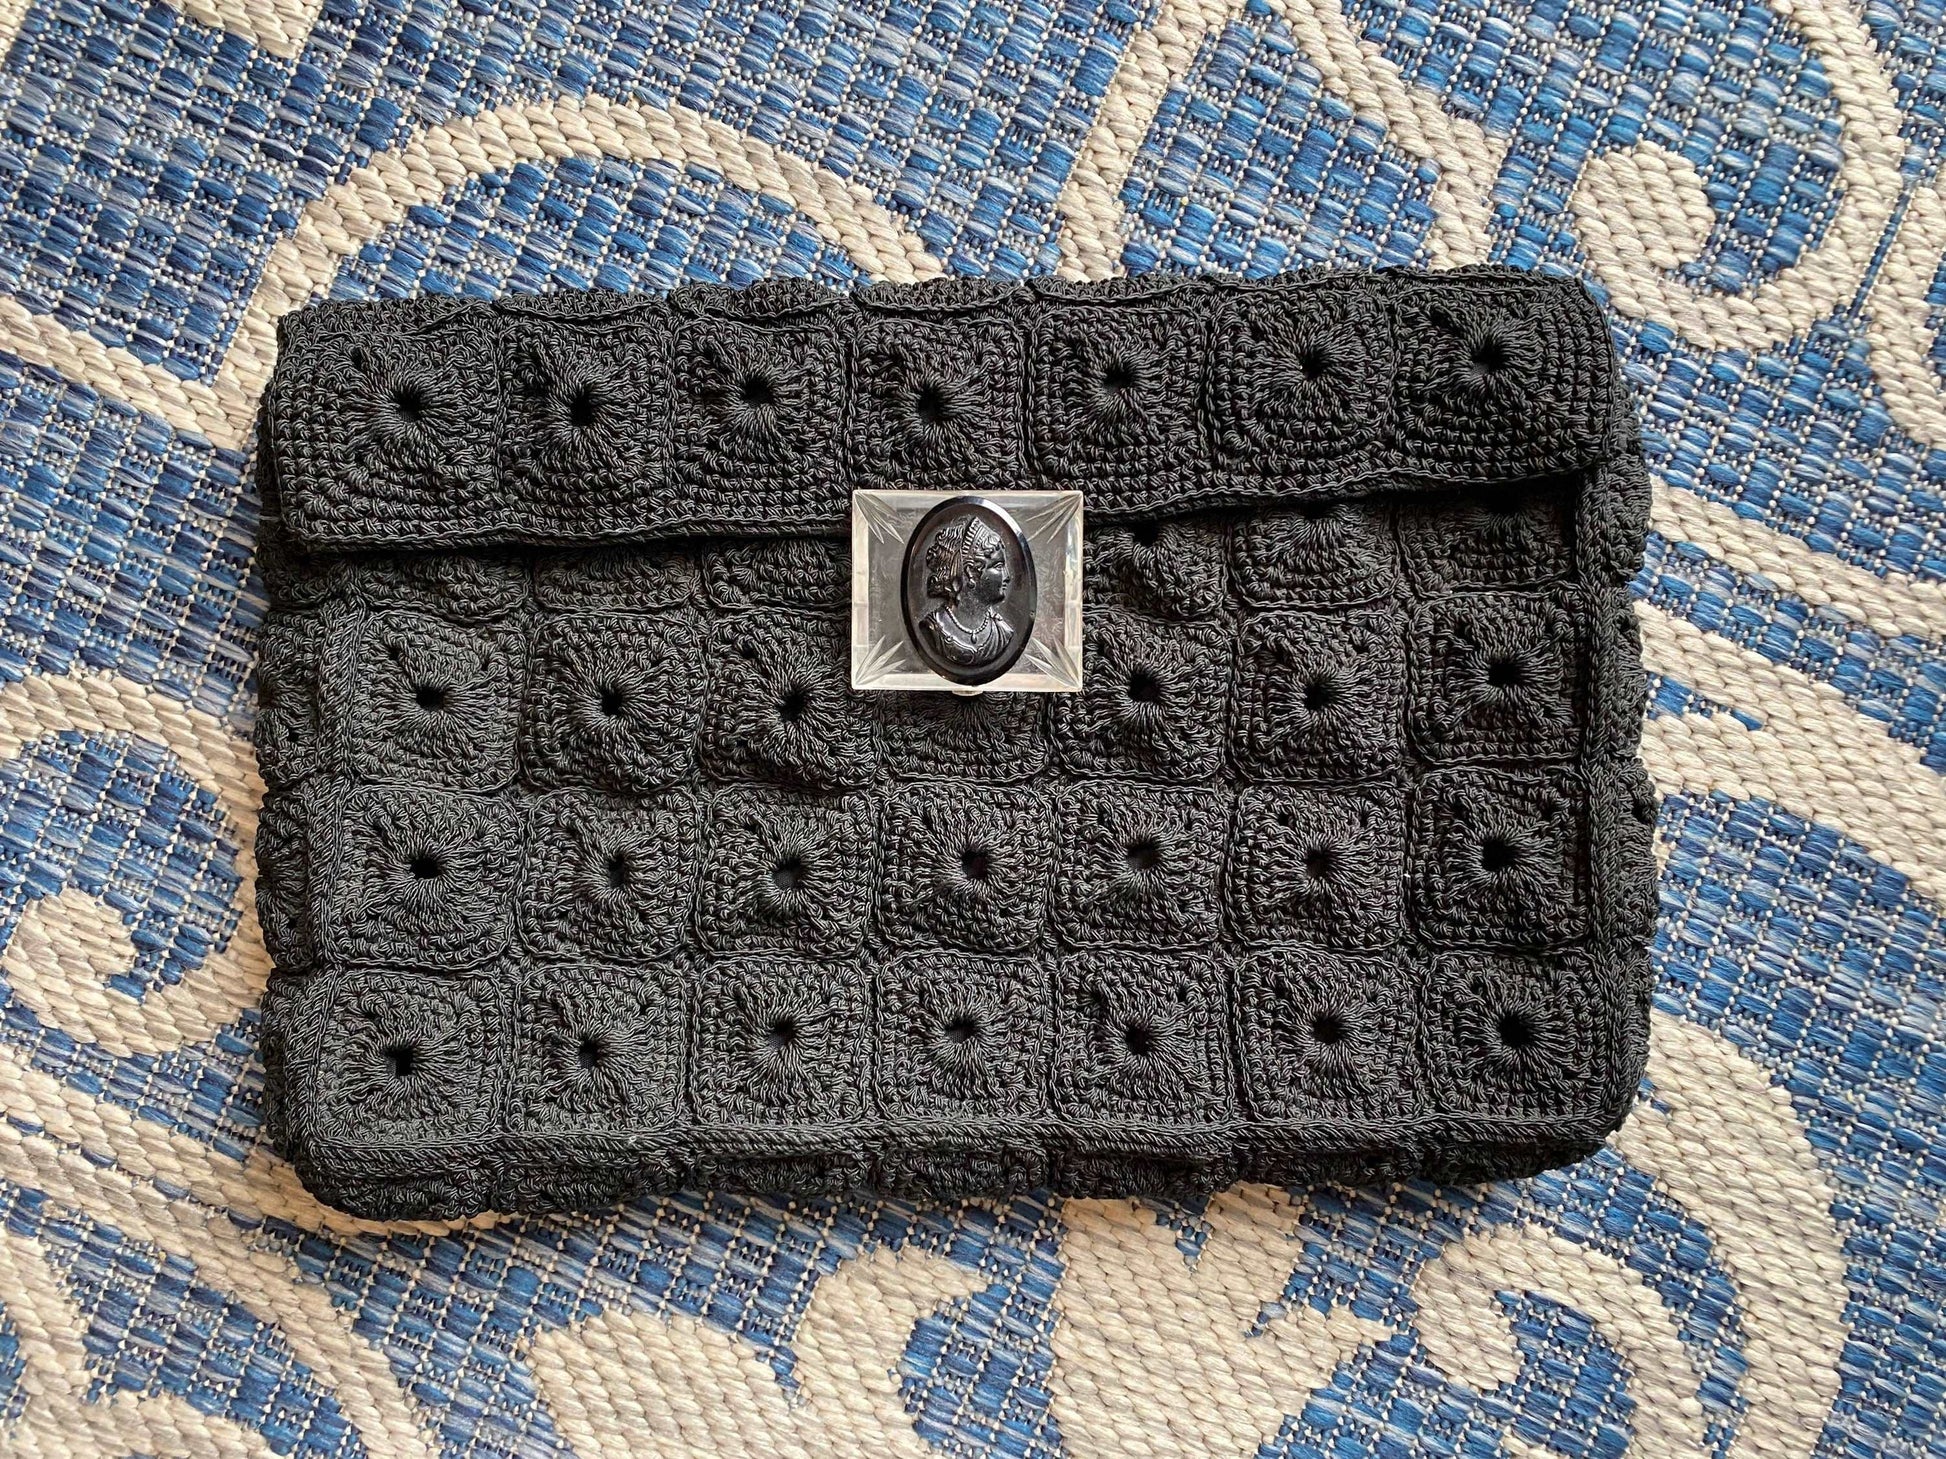 Vintage 1940s Black Macrame Handbag / 40s retro crochet large purse with lucite clasp